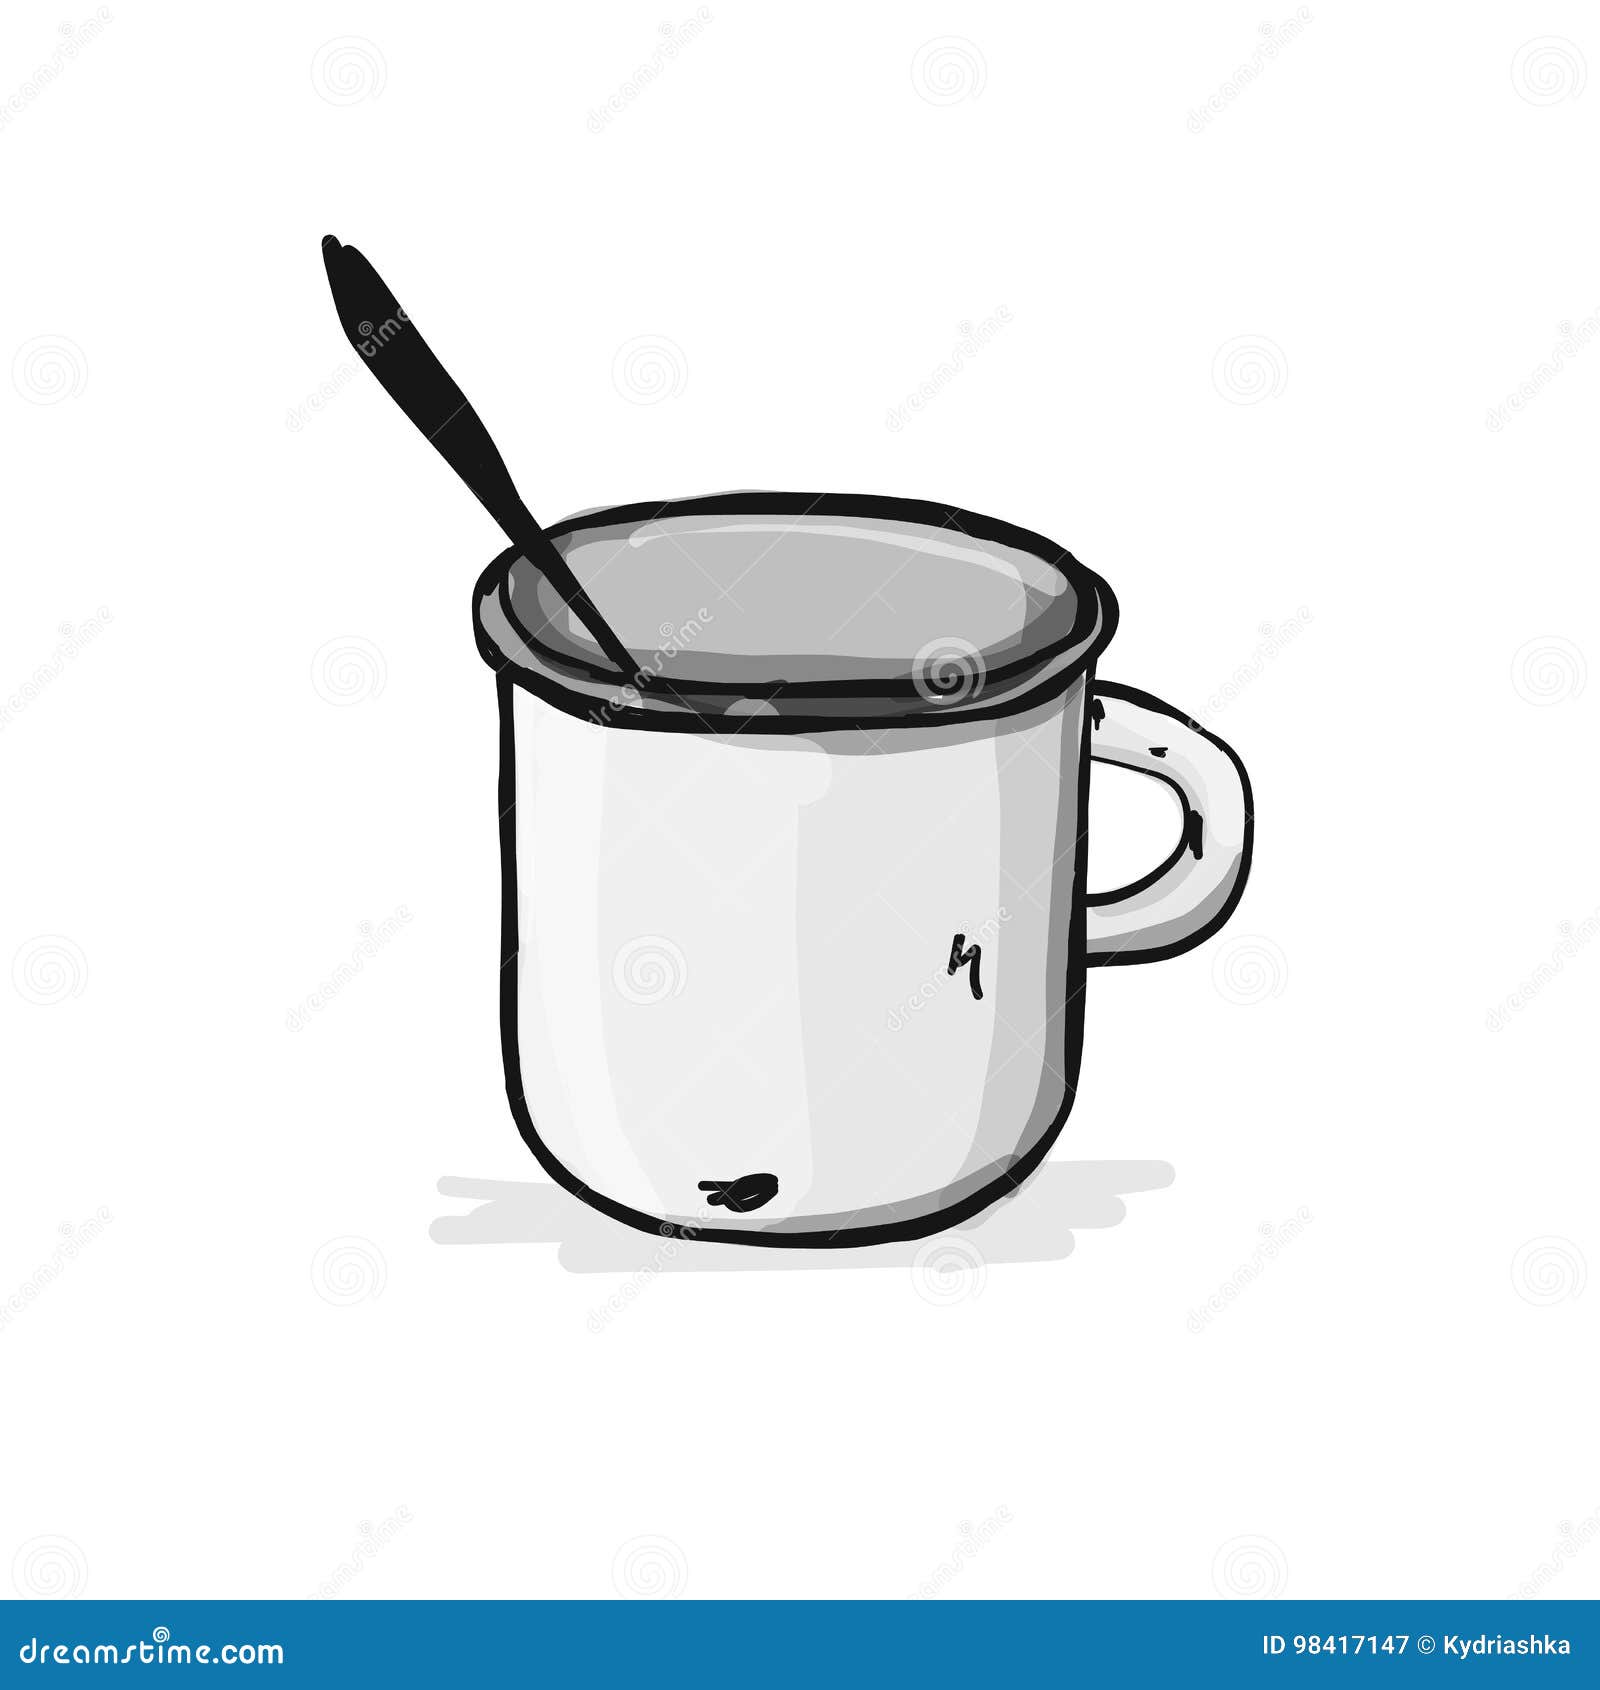 Old enameled mug, sketch for your design. Vector illustration